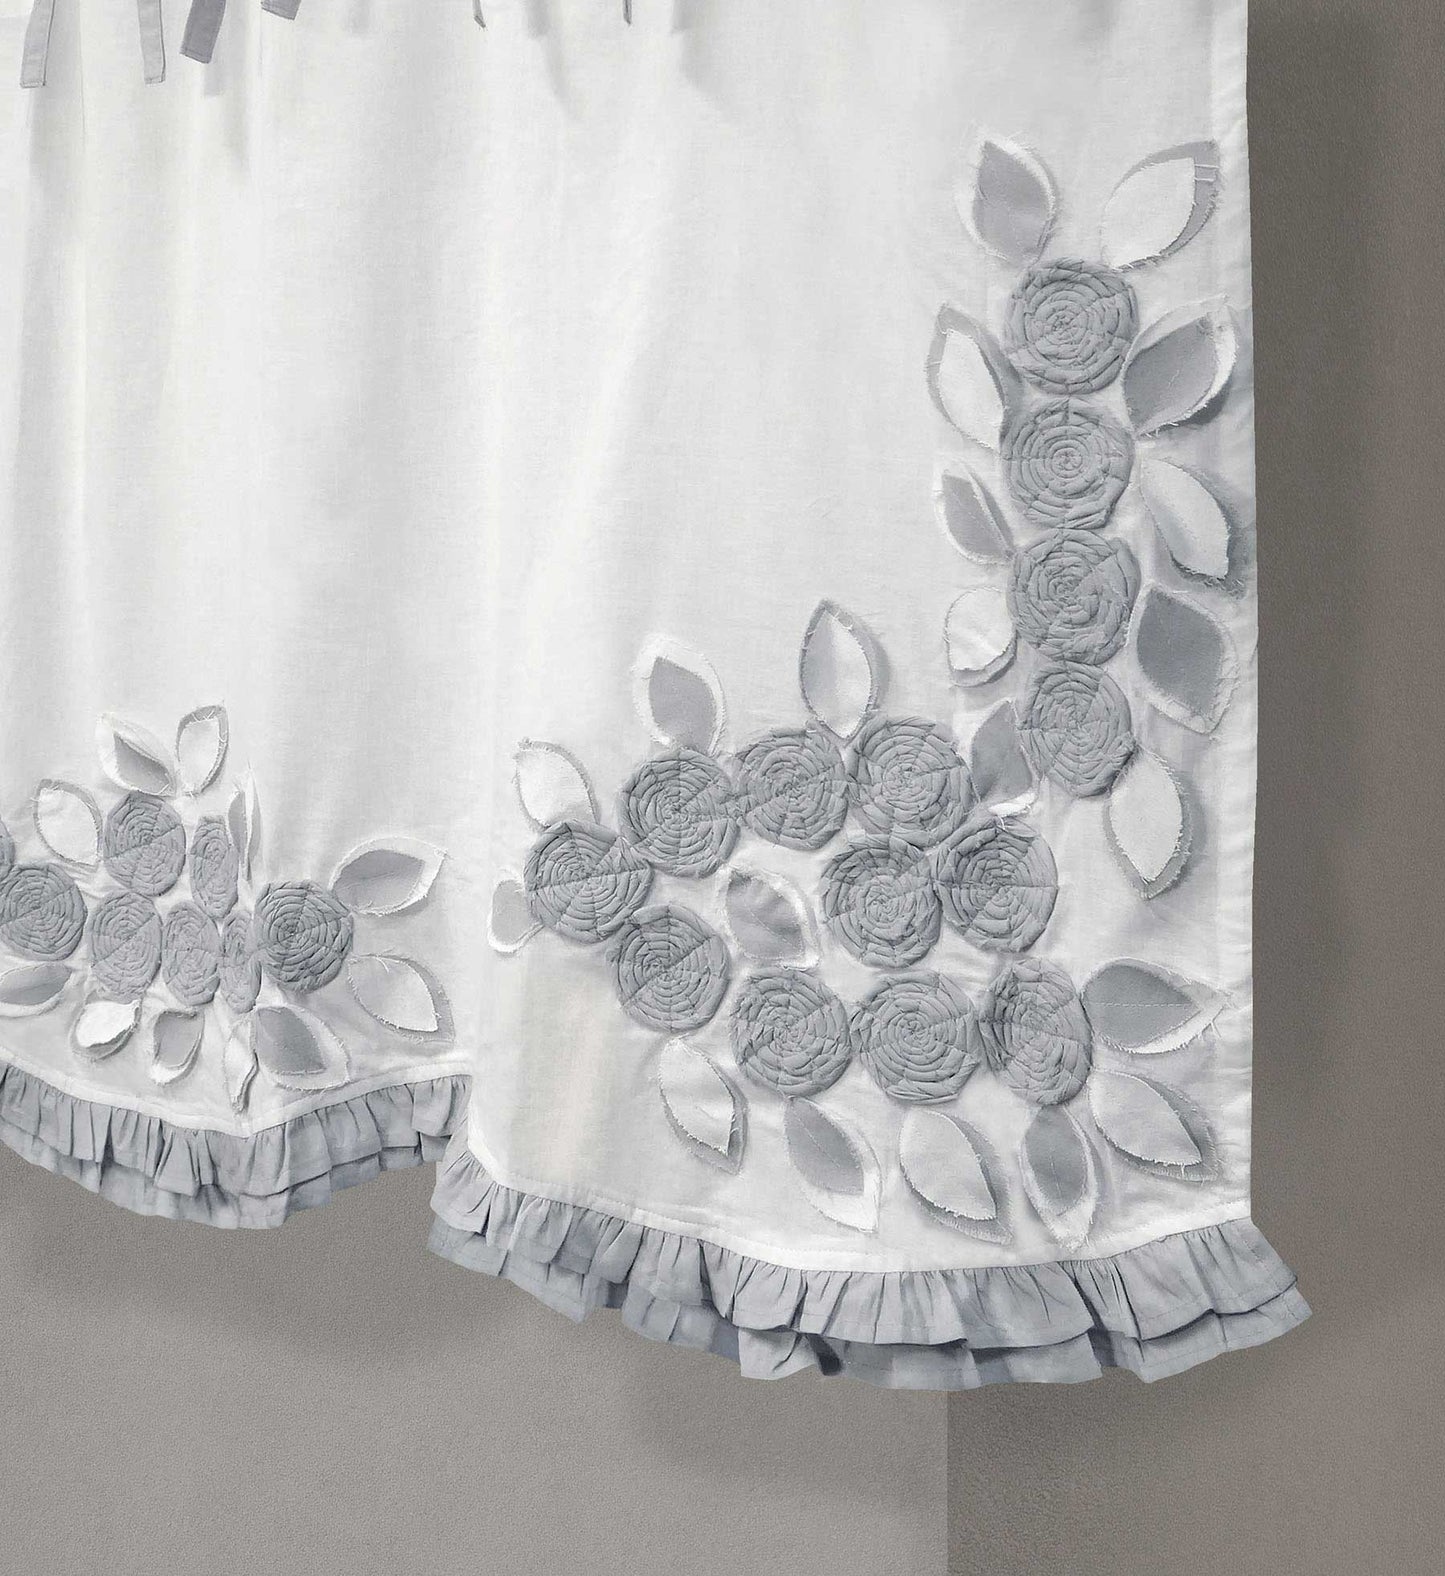 Mantovana Stile Shabby Chic con Rose Applicate 140x80  cm Colore Bianco / Grigio Chiaro